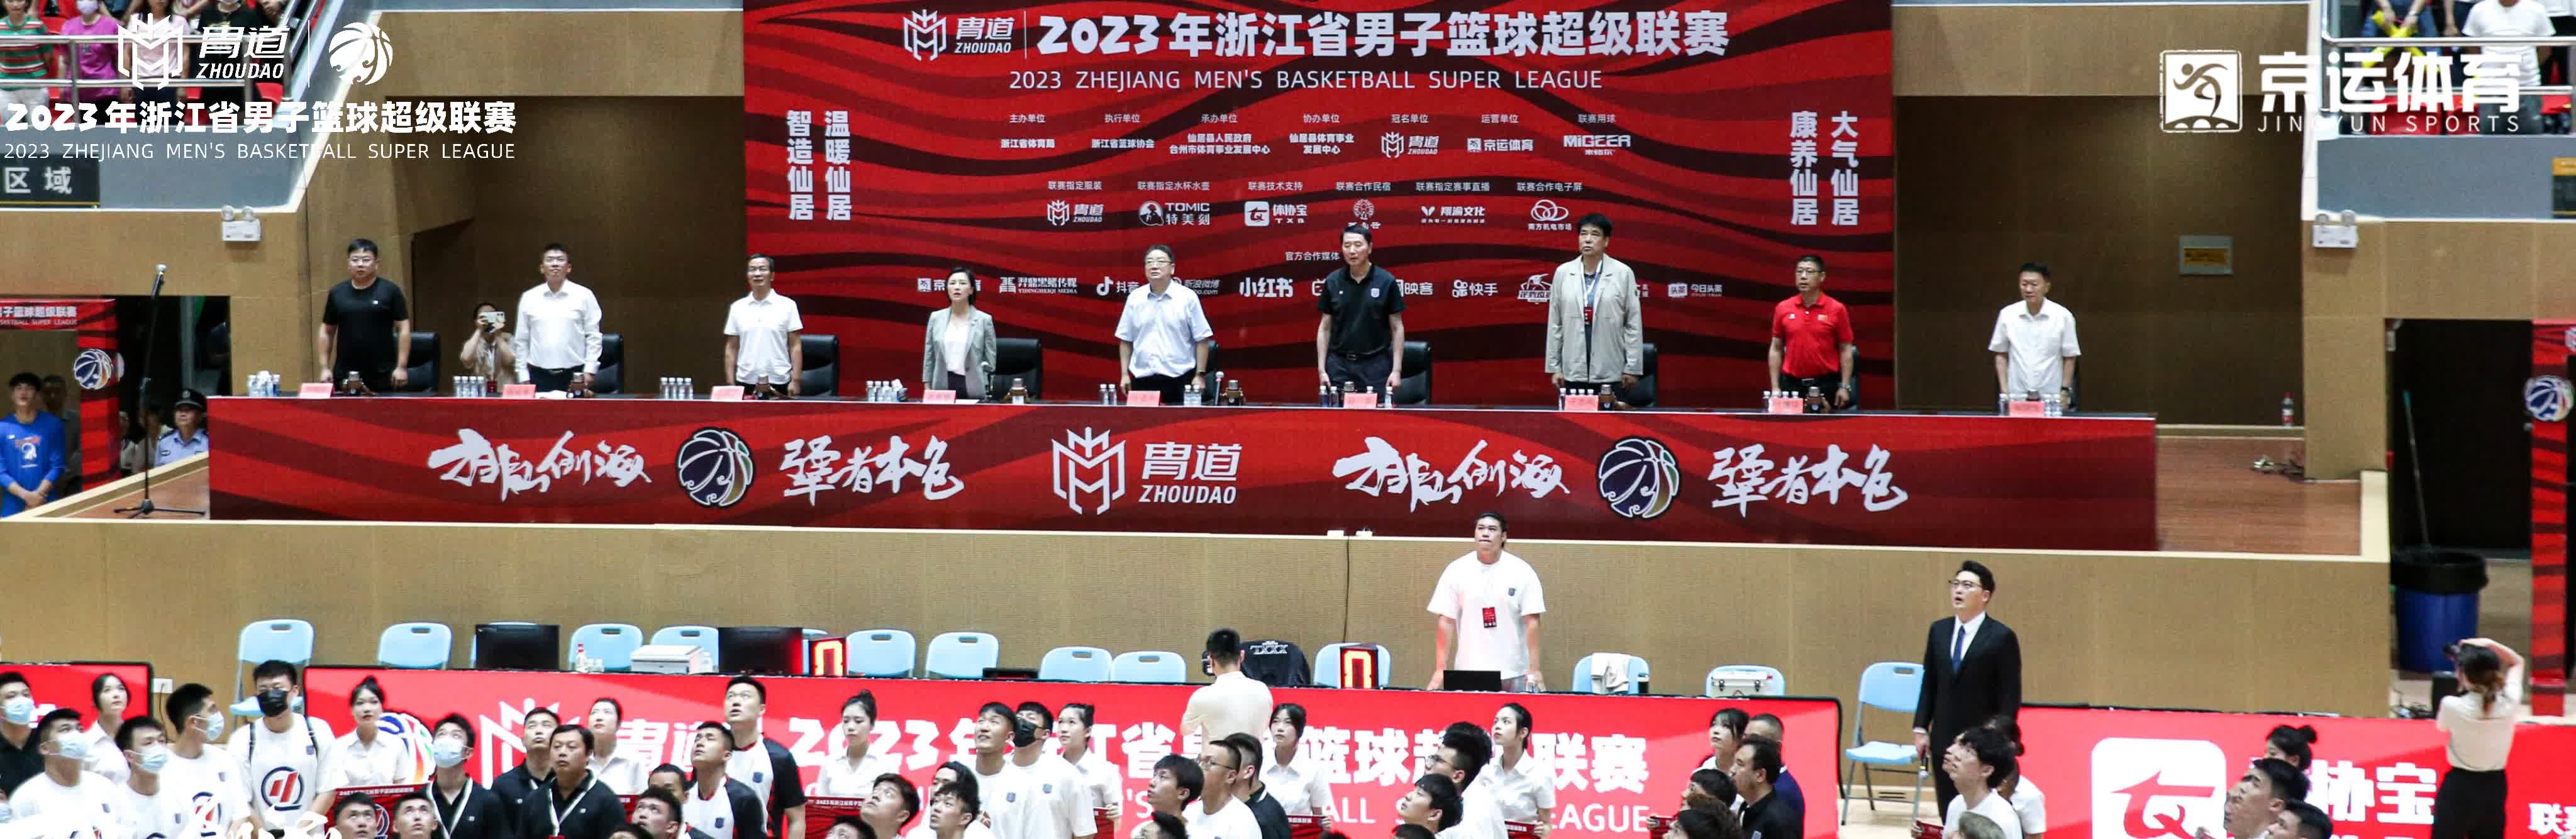 2023年浙江省男子篮球超级联赛在台州仙居隆重开幕